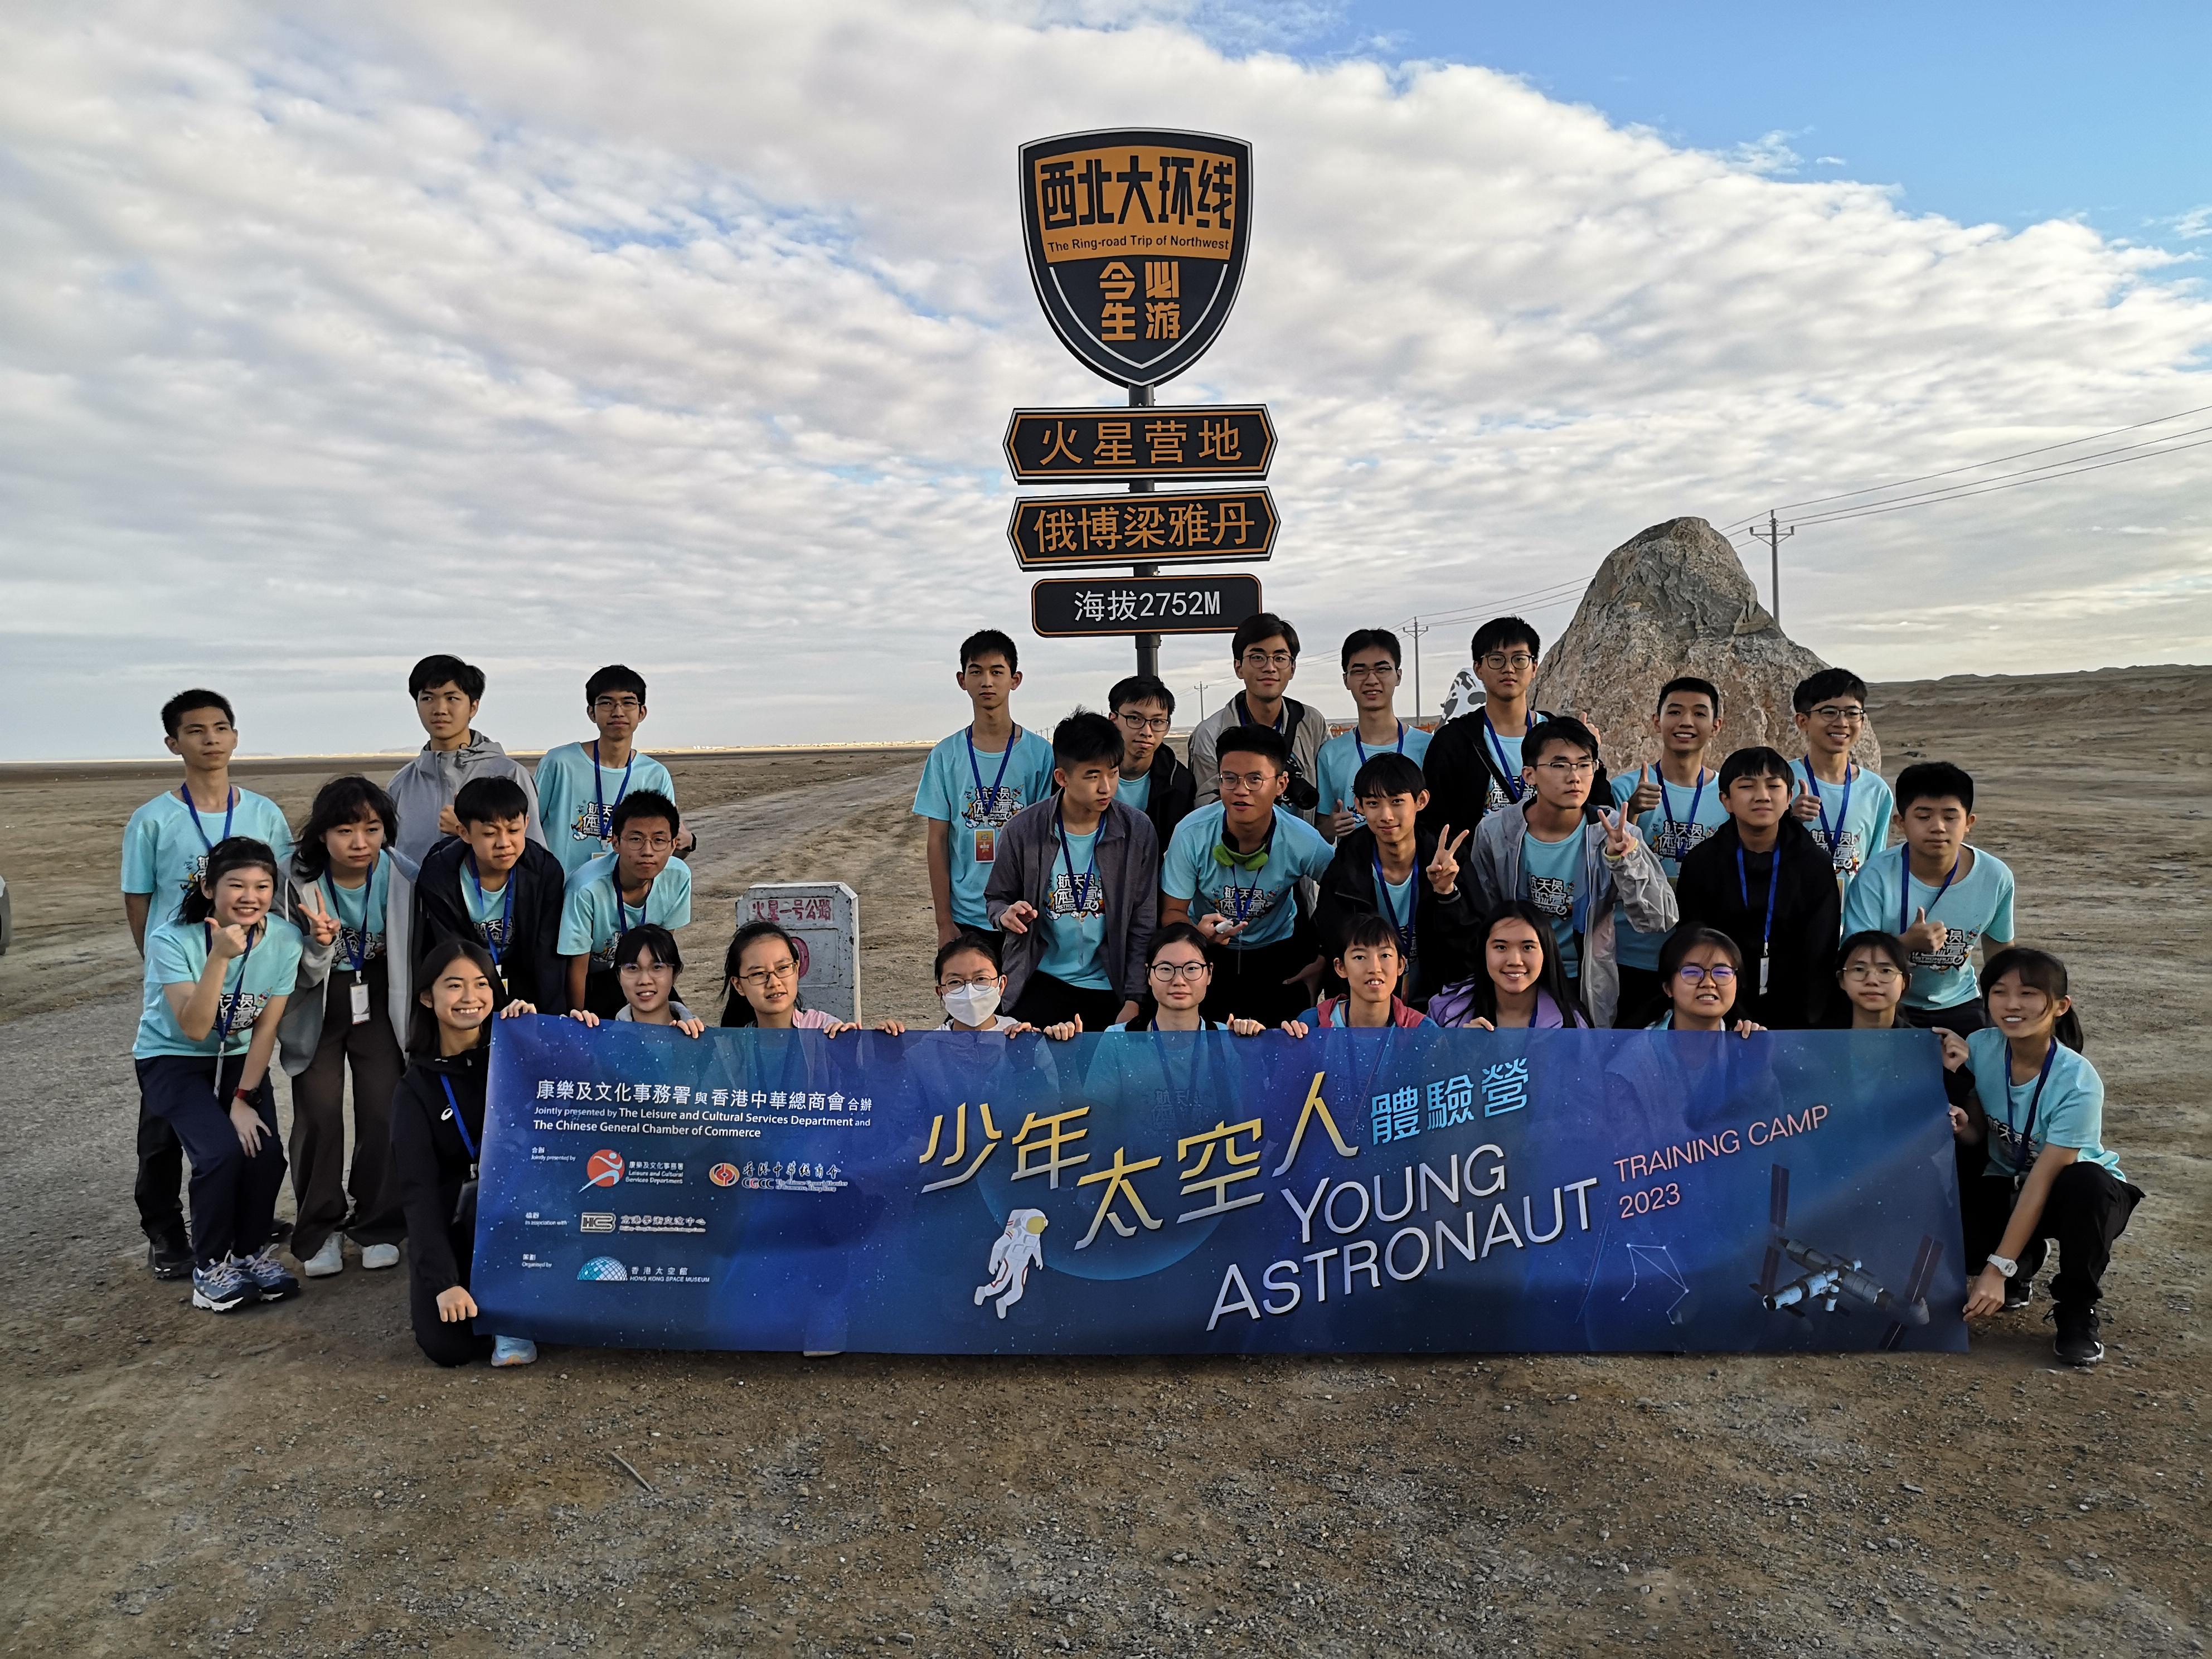 三十位中学生完成由香港太空馆策划的「少年太空人体验营2023」。图示学员前往青海冷湖火星营地途中合照。